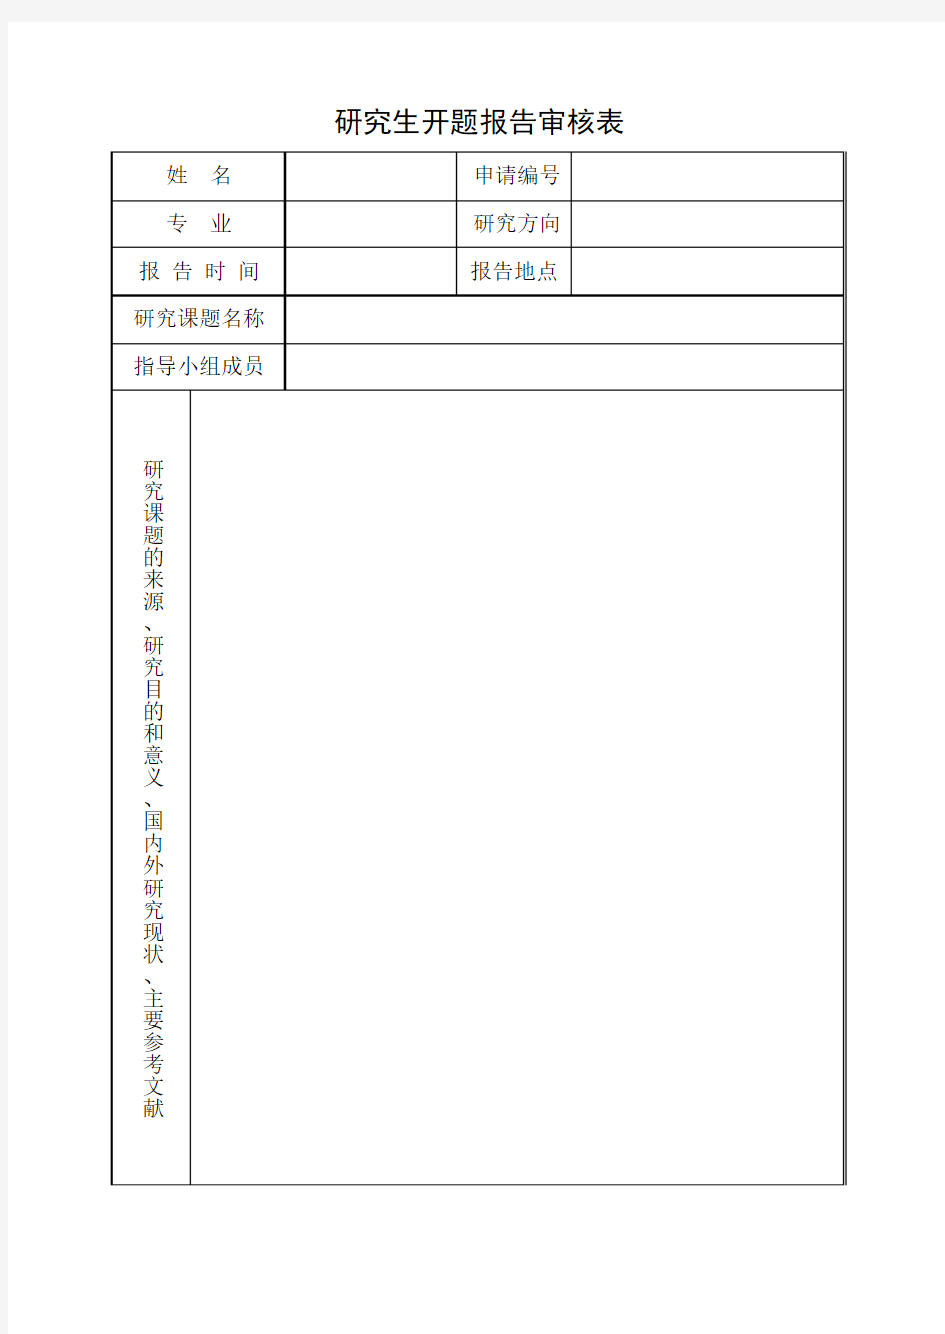 1-研究生开题报告审核表(B5纸双面)